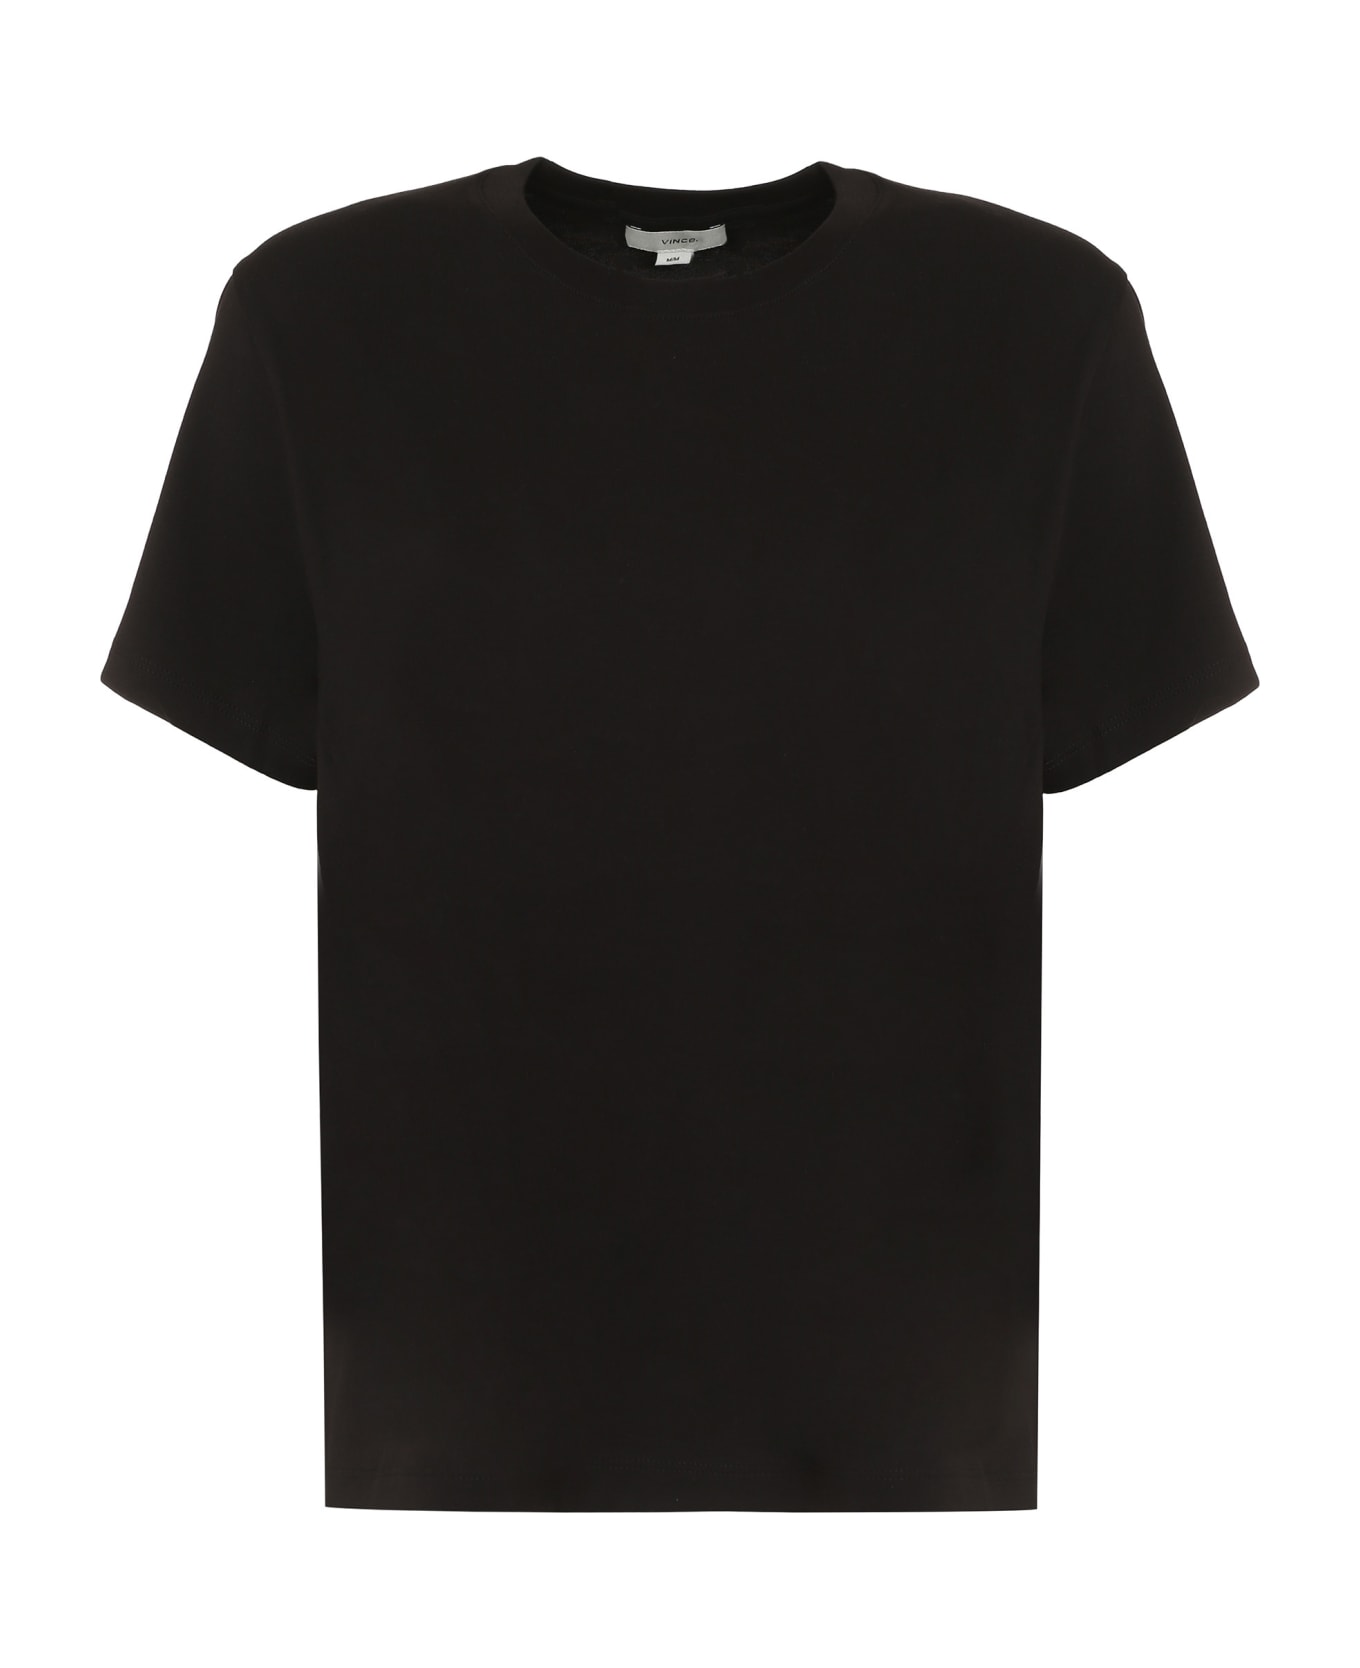 Vince Cotton T-shirt - Blk Black Tシャツ